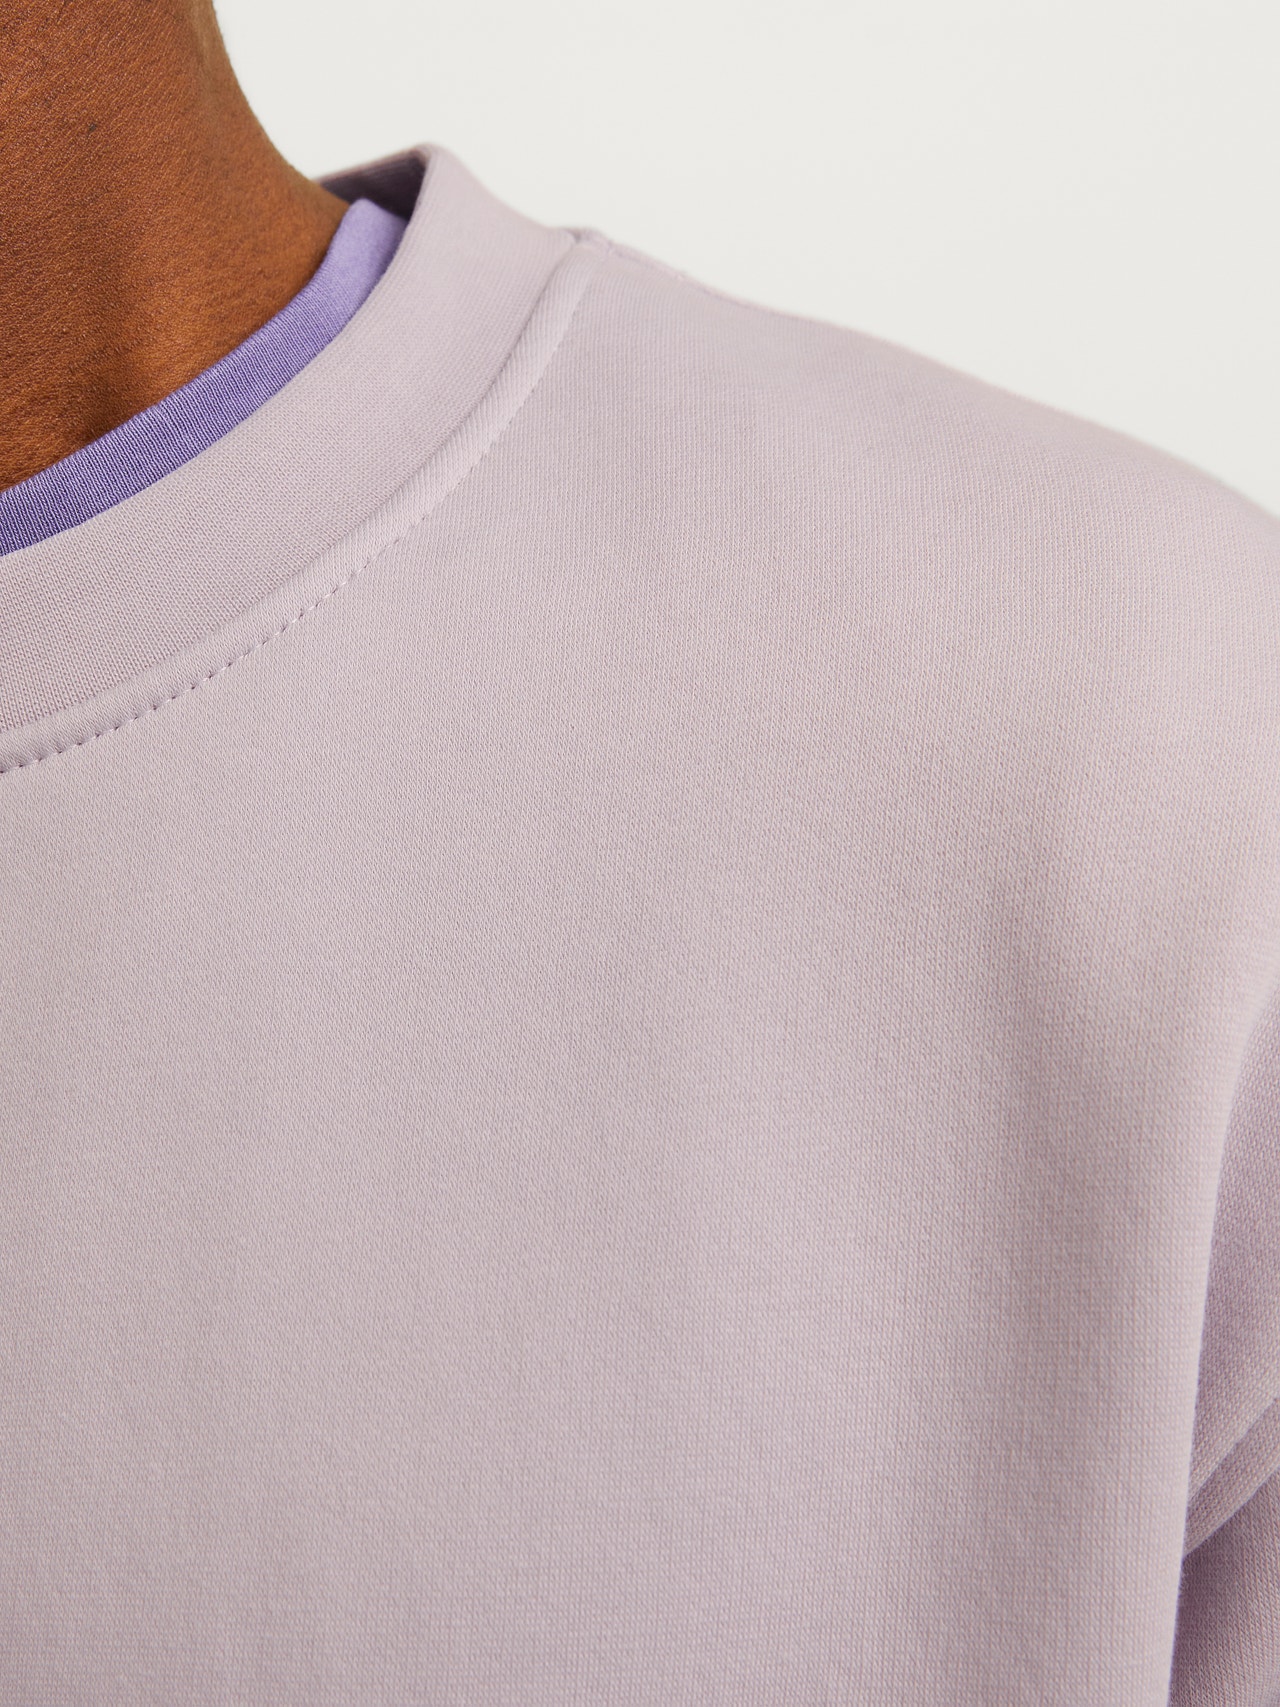 Jack & Jones Printed Crew neck Sweatshirt -Lavender Frost - 12241694